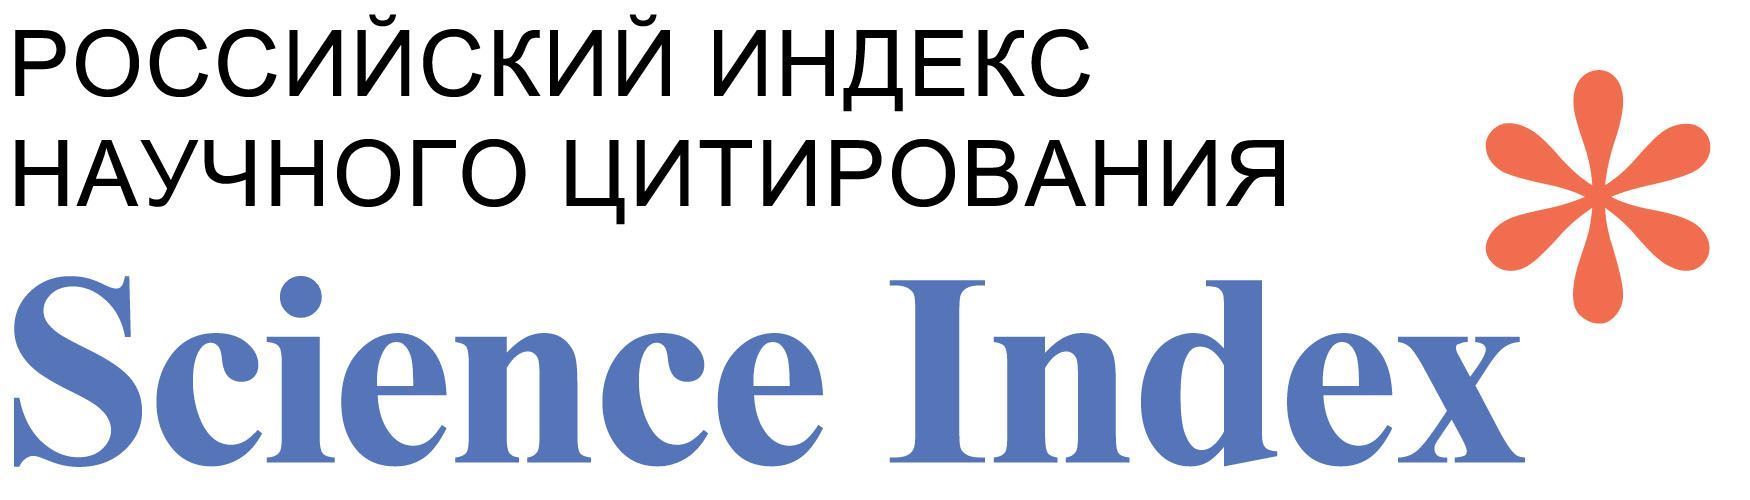 Российский индекс научного цитирования (РИНЦ)